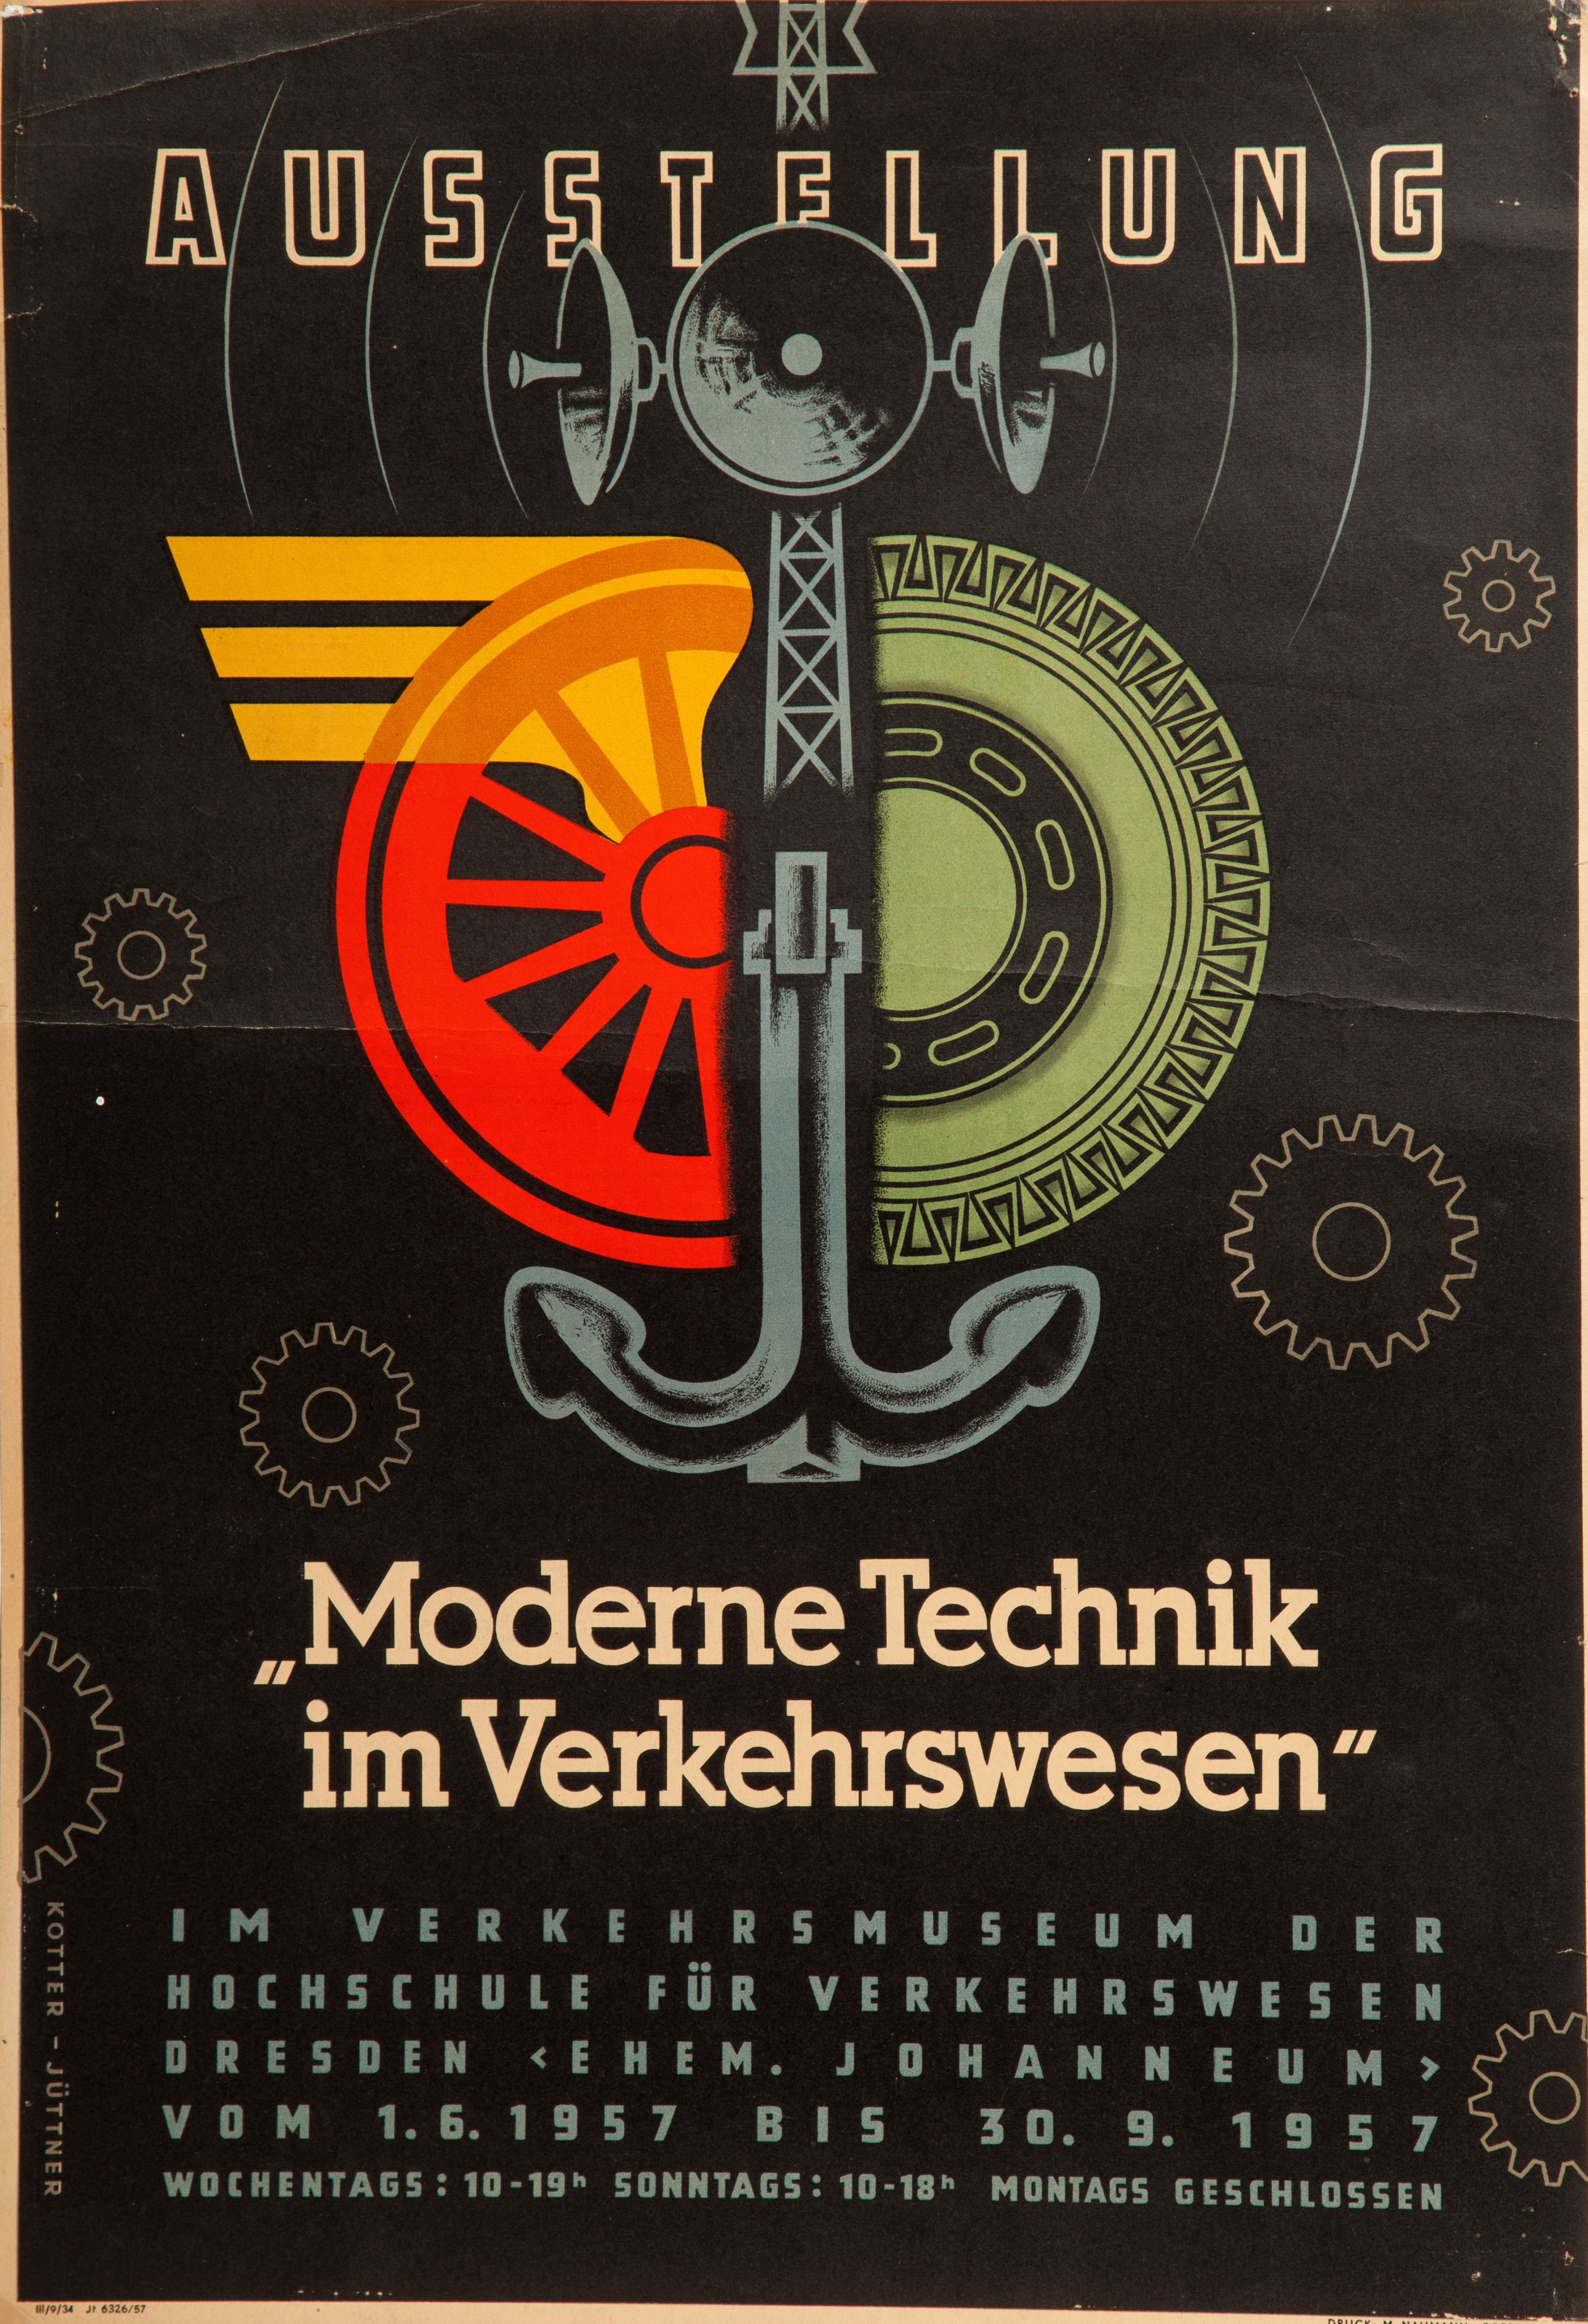 PL 1, Plakat der ersten Sonderausstellung „Moderne Technik“, 1957